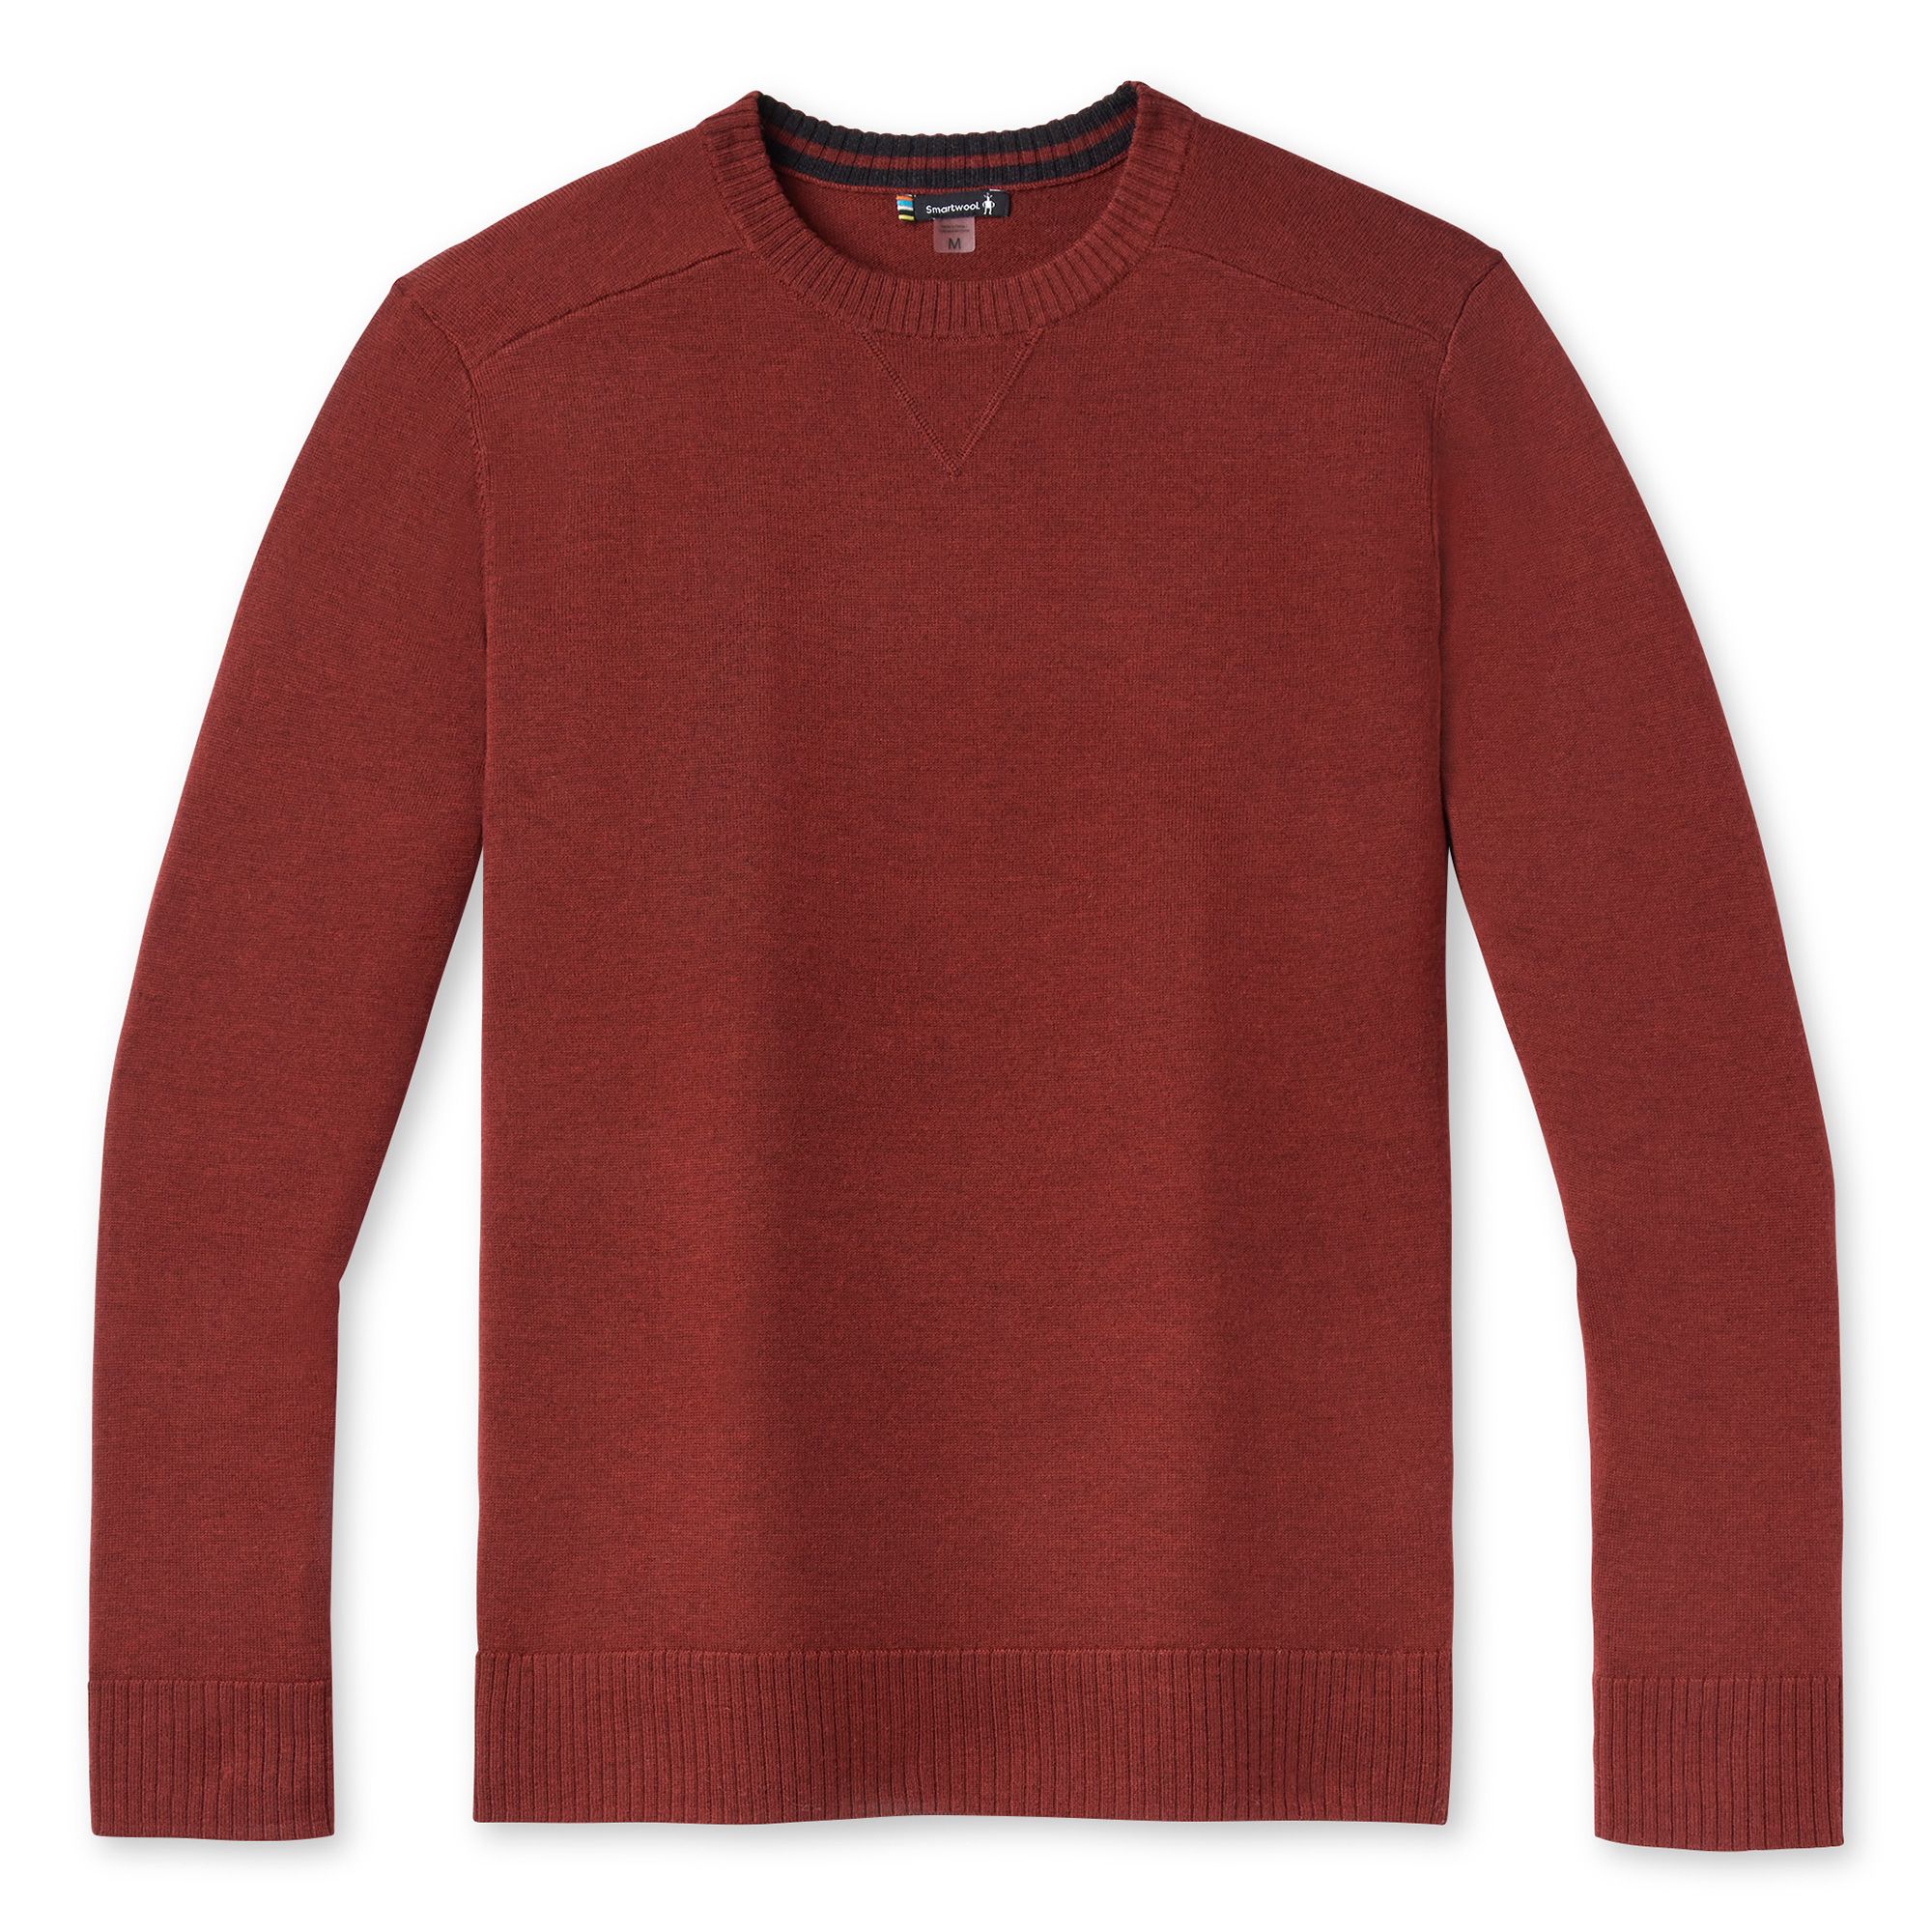 Men's Sparwood Crew Sweater in Tibetan Red Heather